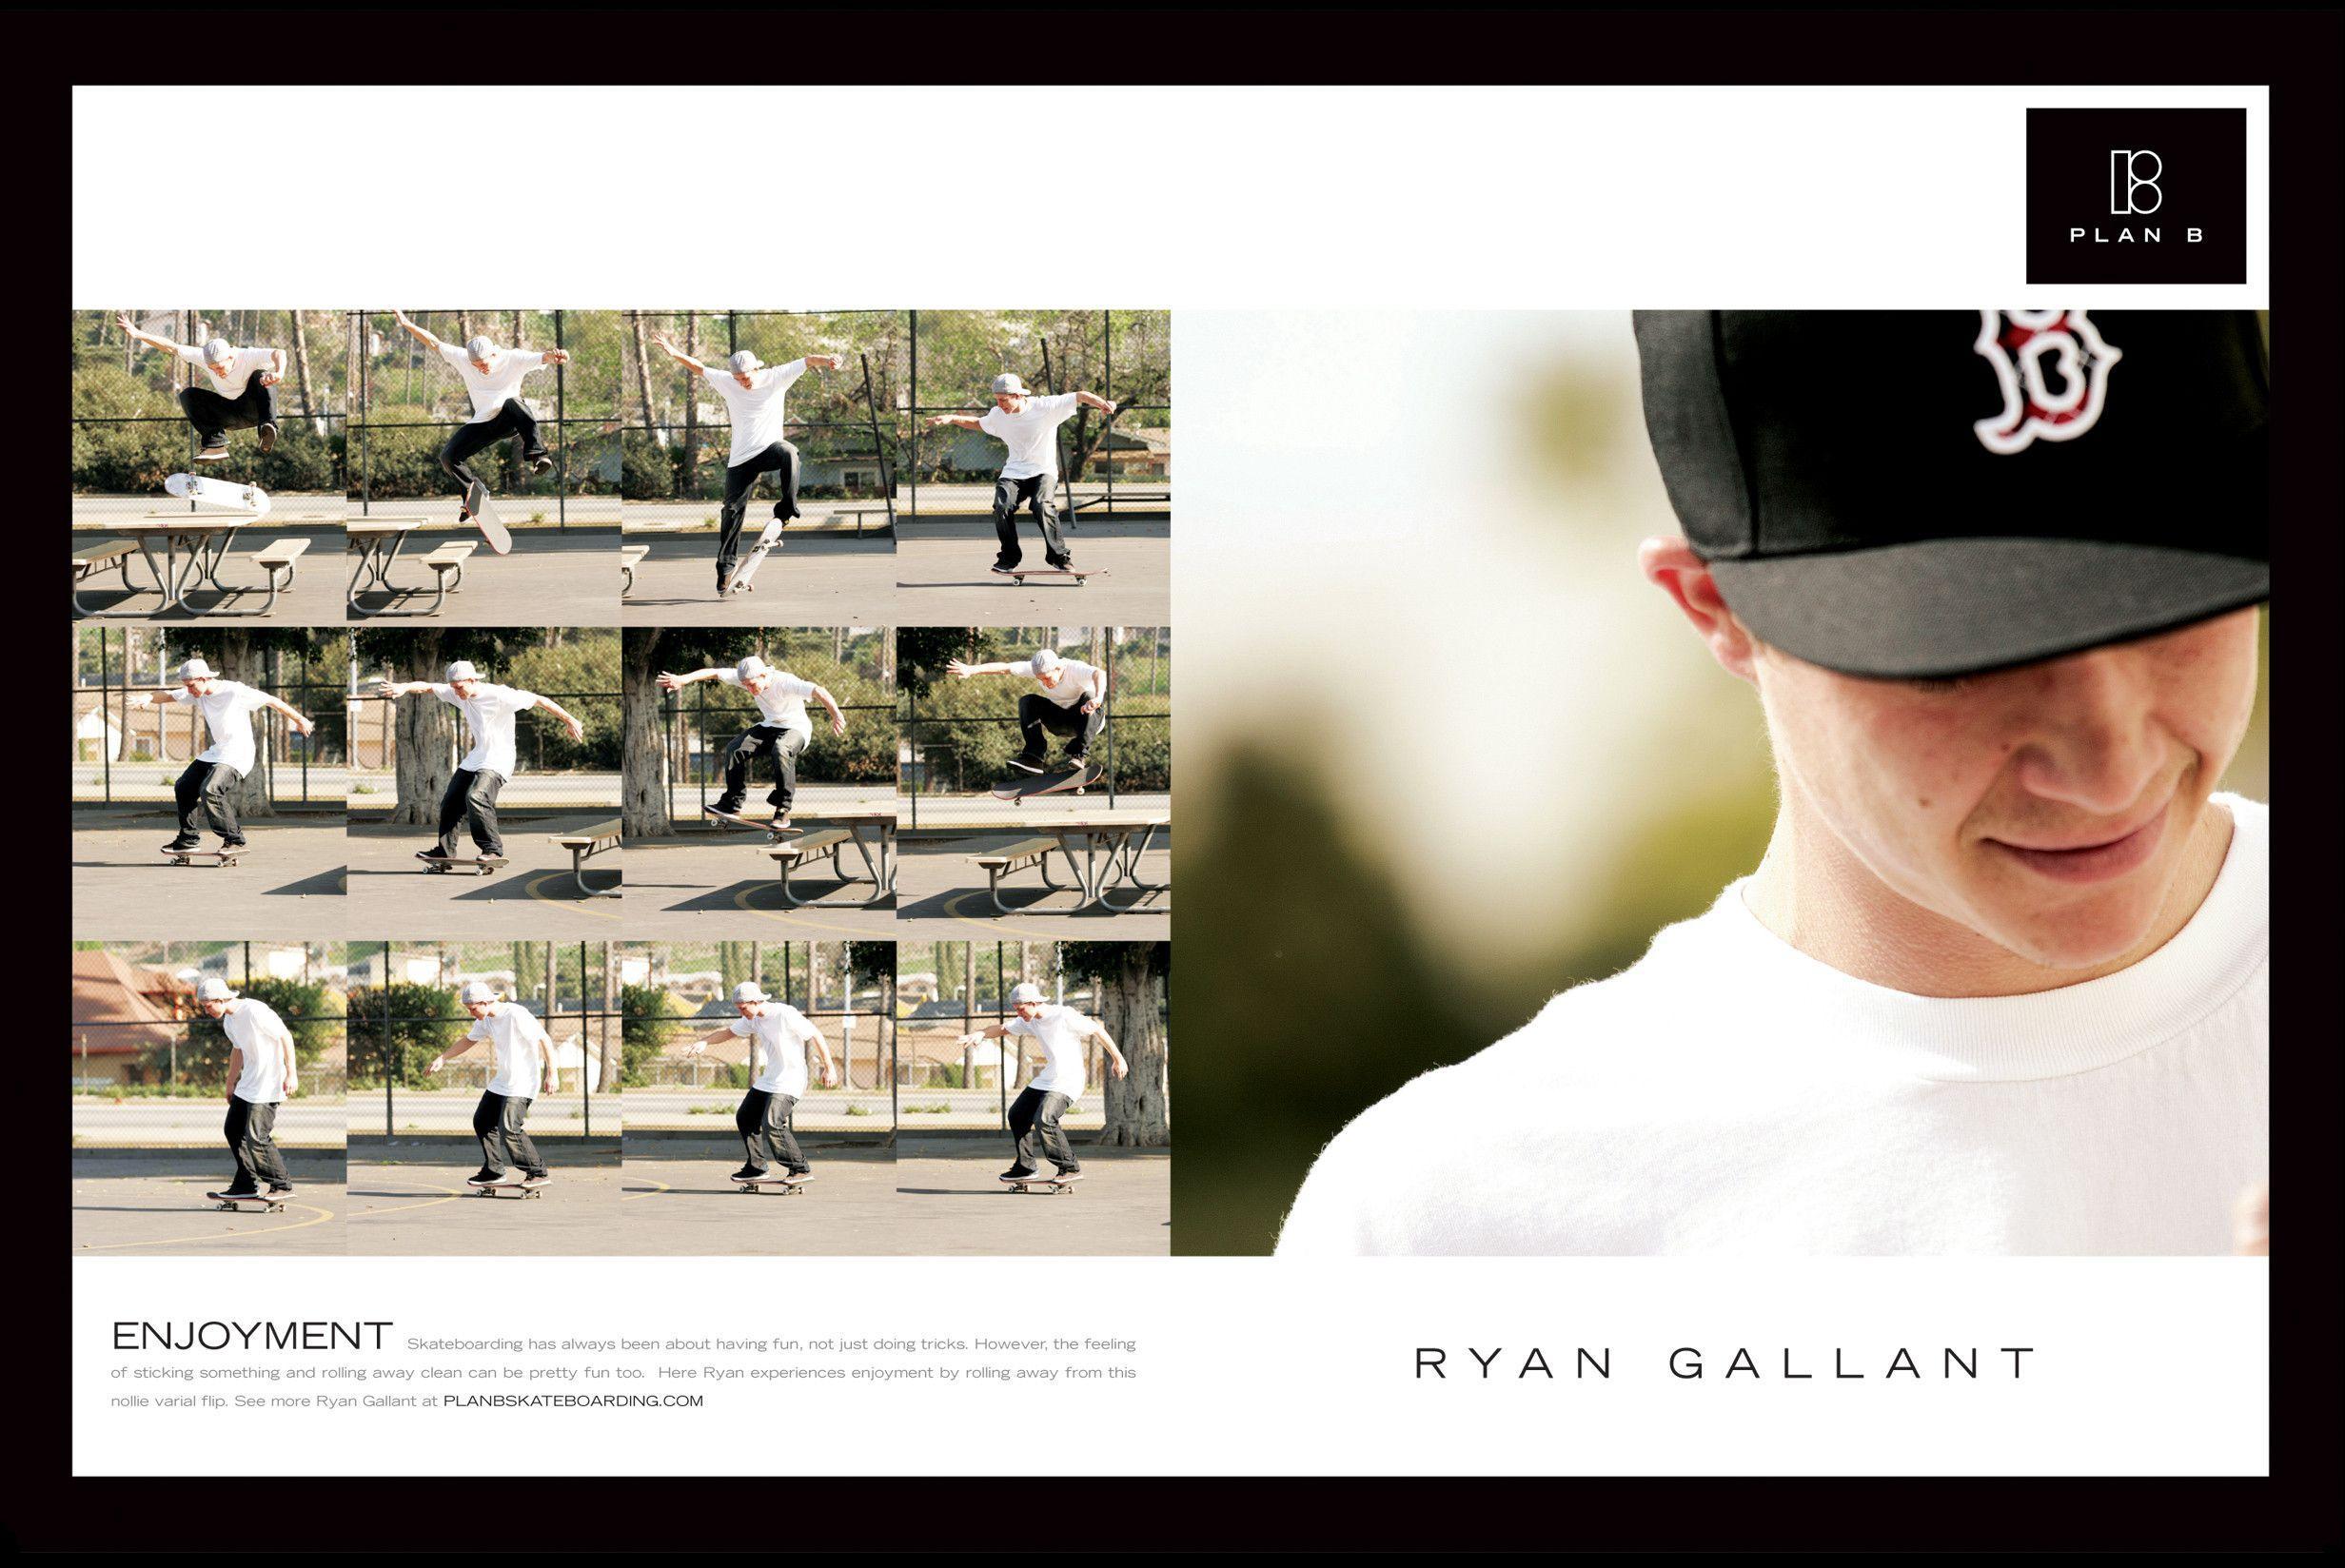 Plan B Skateboarding Image & Picture